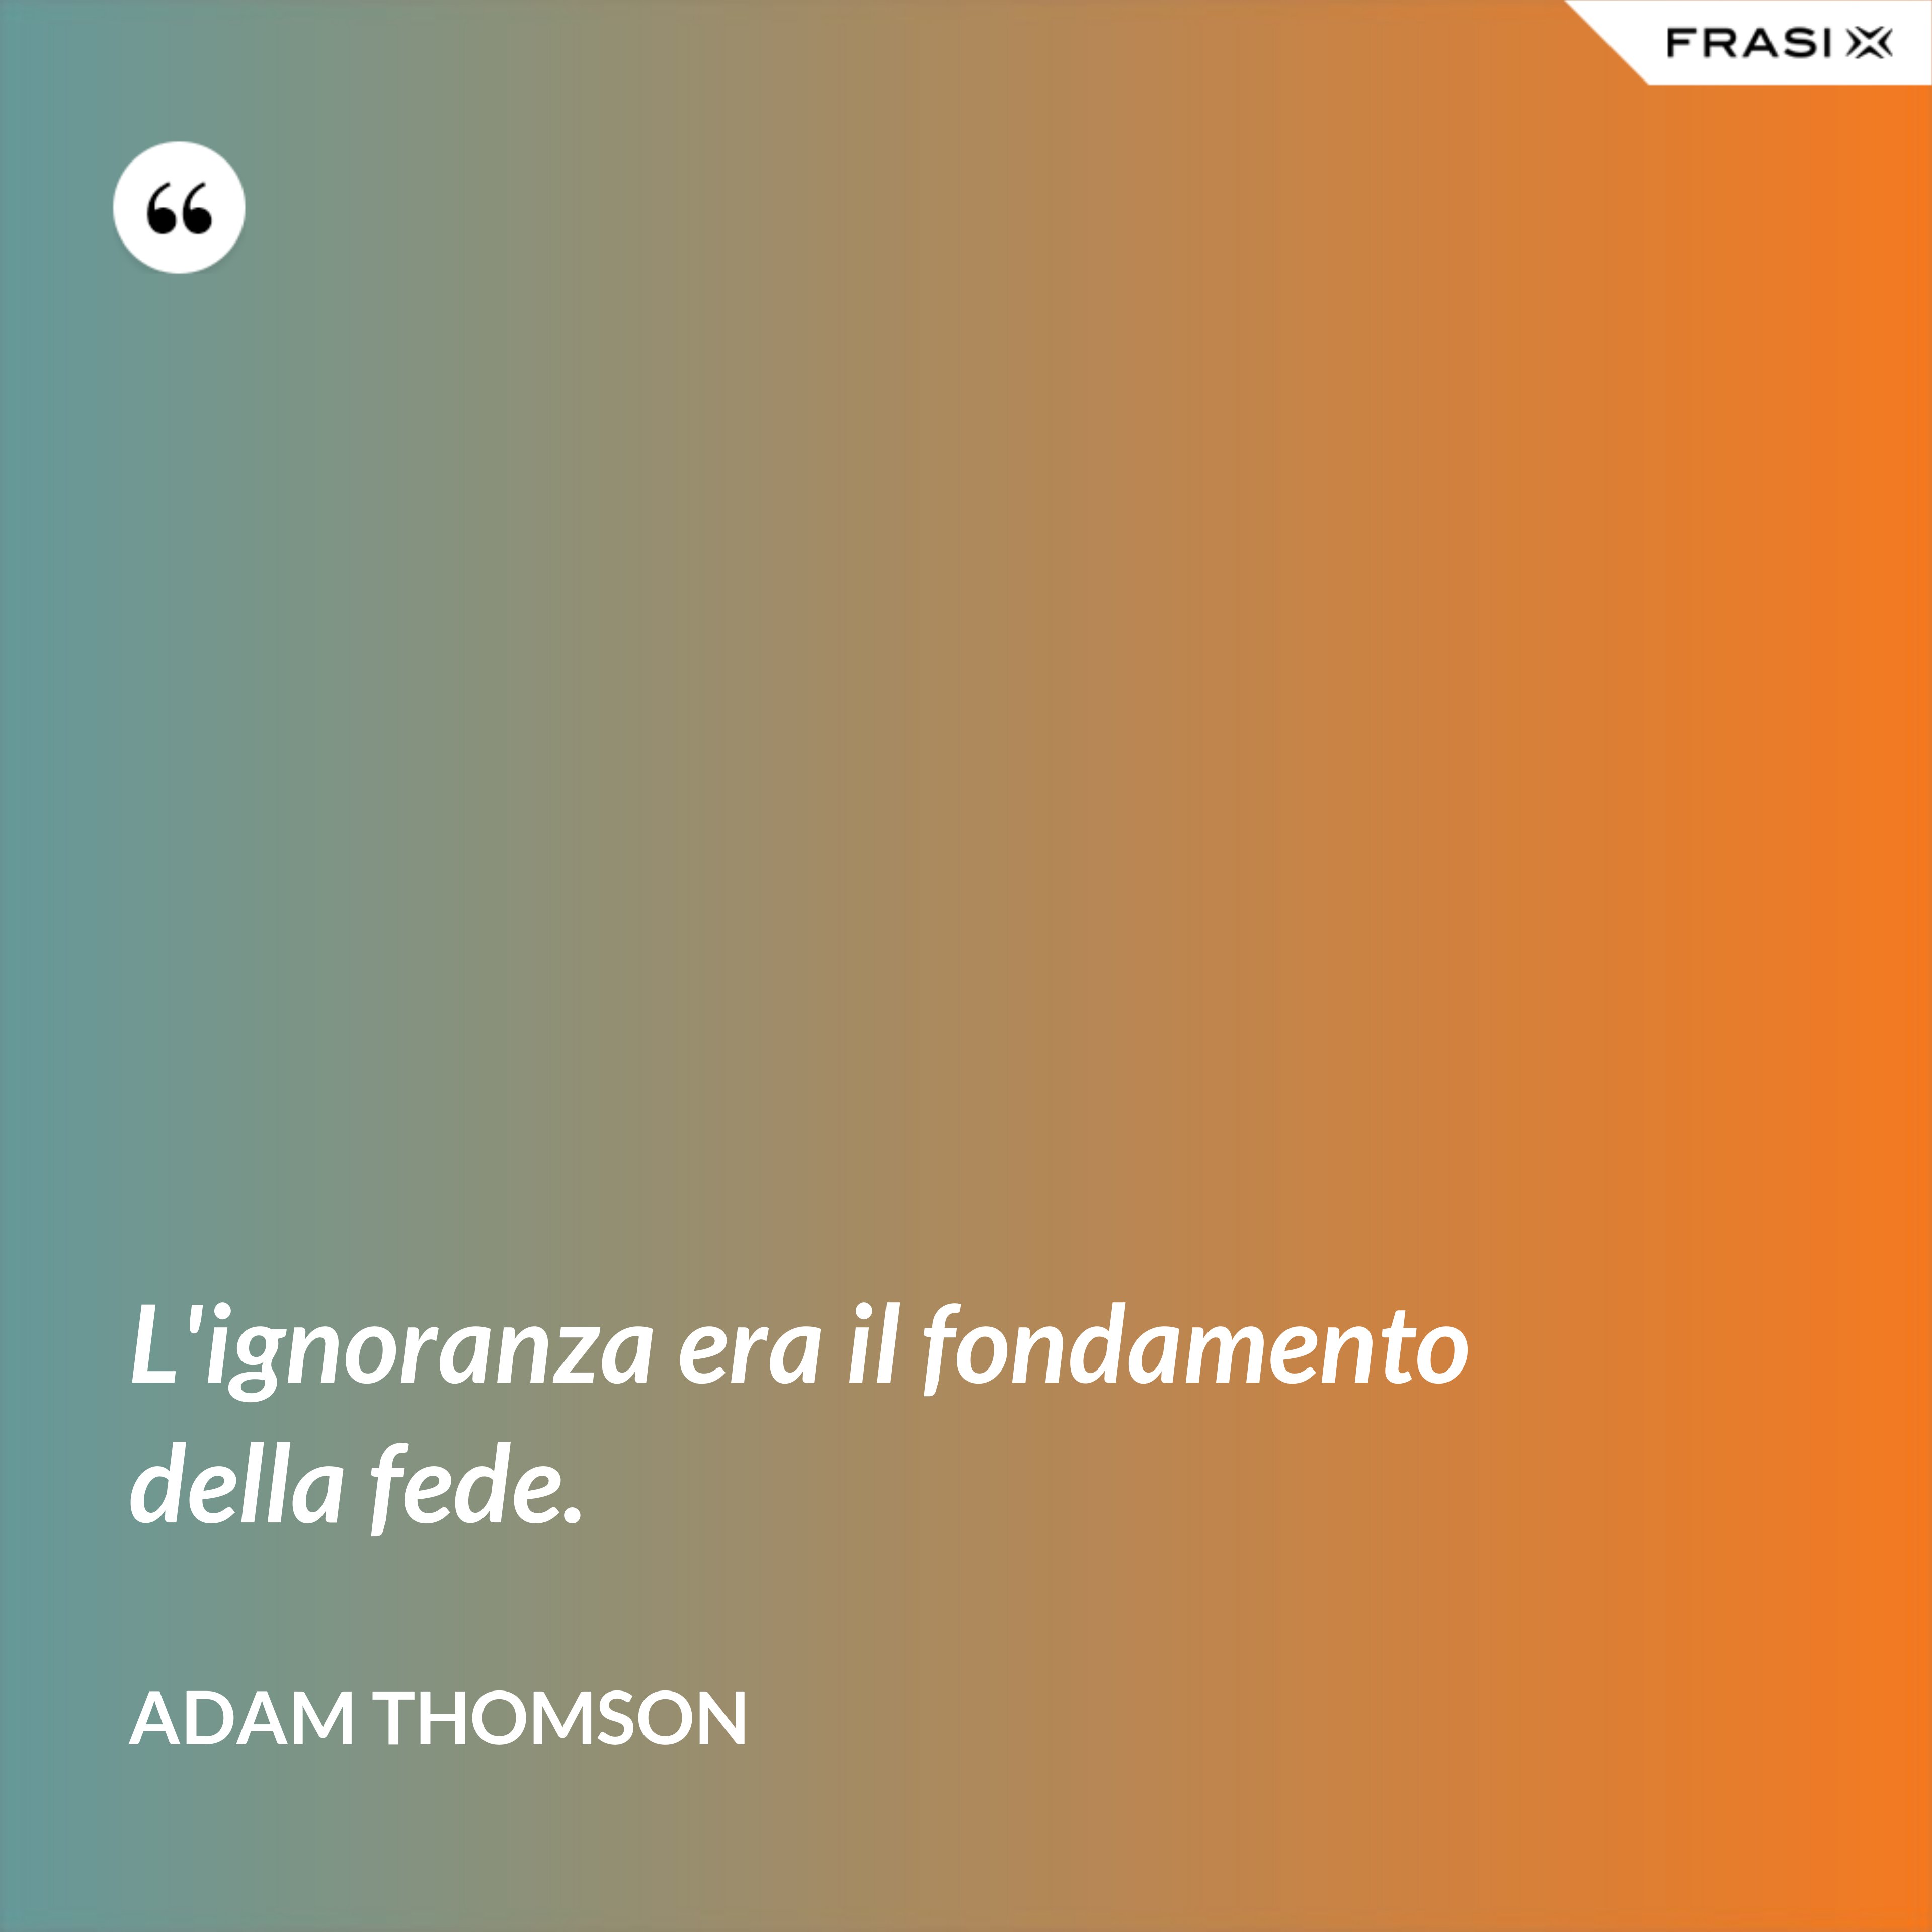 L'ignoranza era il fondamento della fede. - Adam Thomson